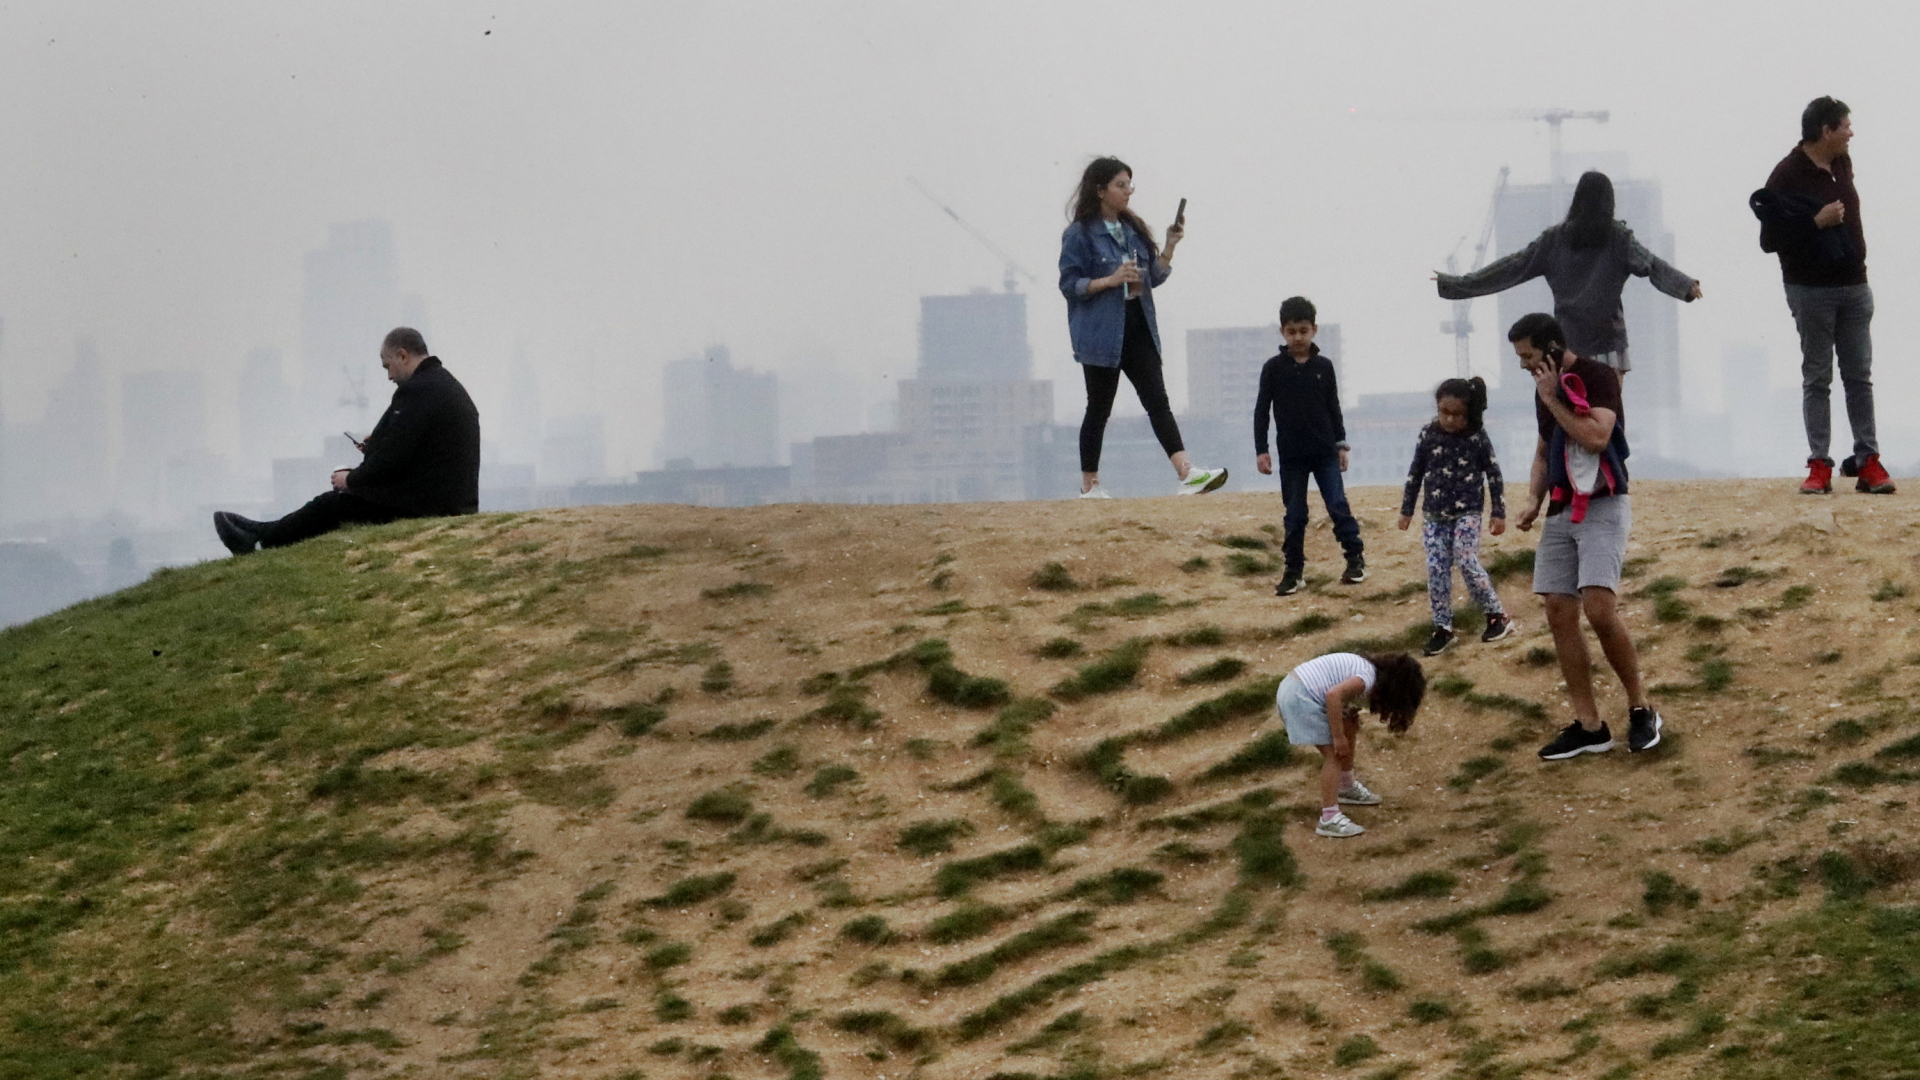 Auf einem Hügel bei Londen genießen Menschen das schöne Wetter